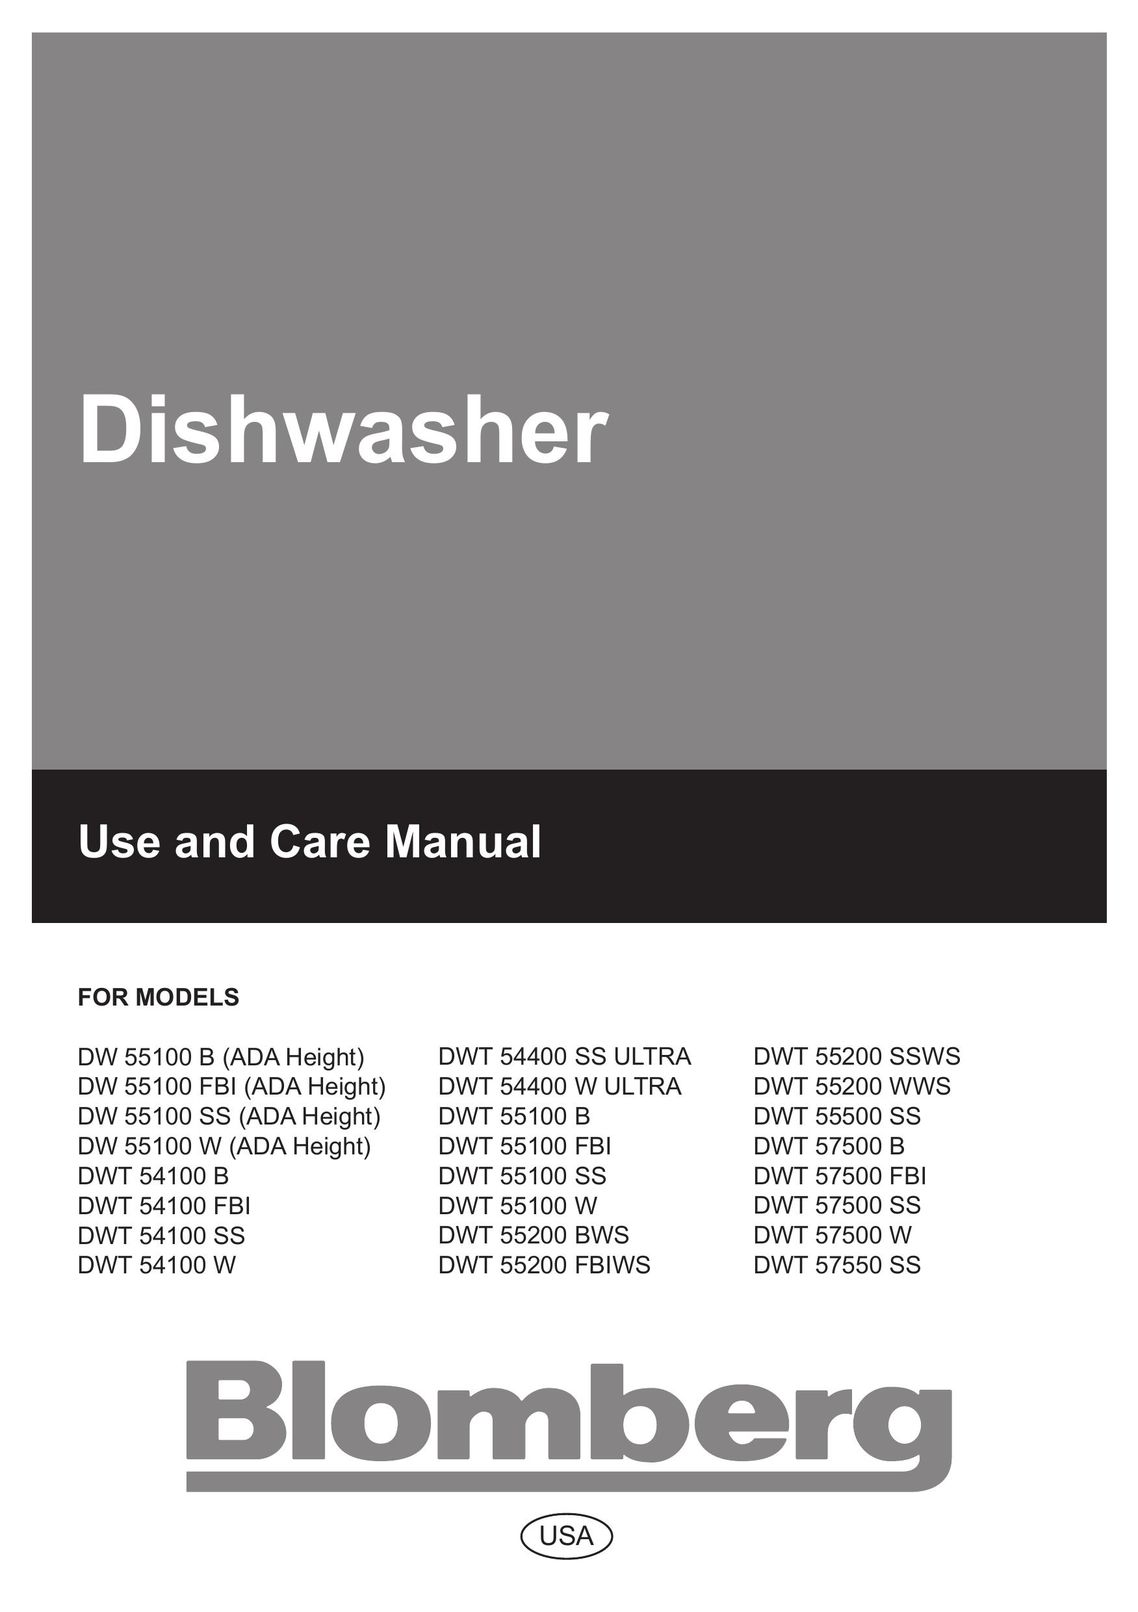 Blomberg DW 57500 SS Dishwasher User Manual